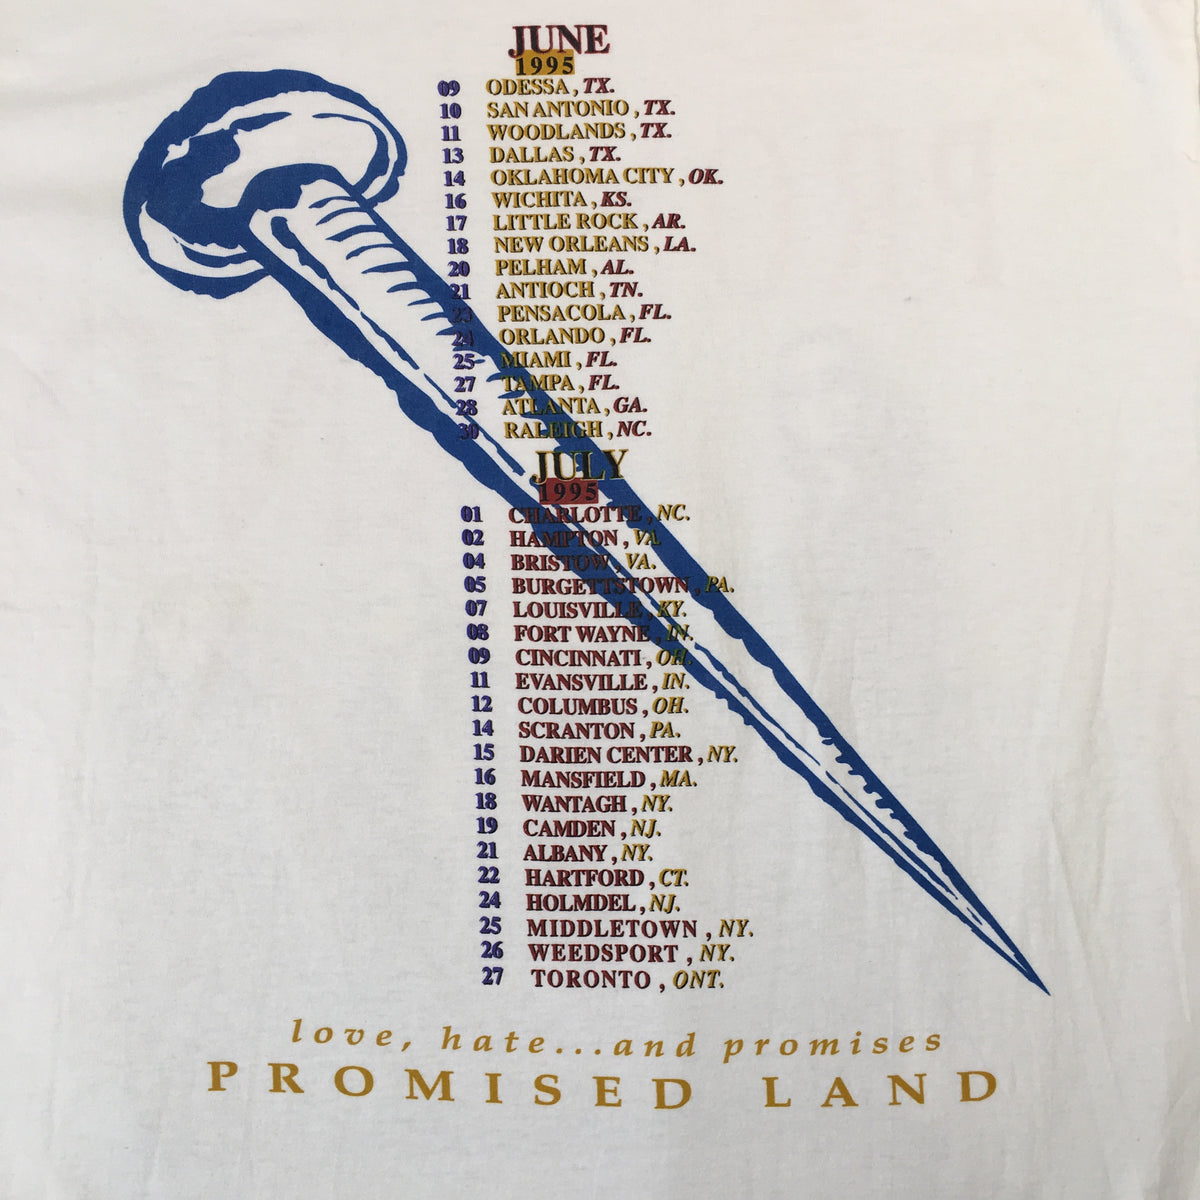 Vintage Queensrÿche &quot;Promised Land&quot; T-Shirt - jointcustodydc